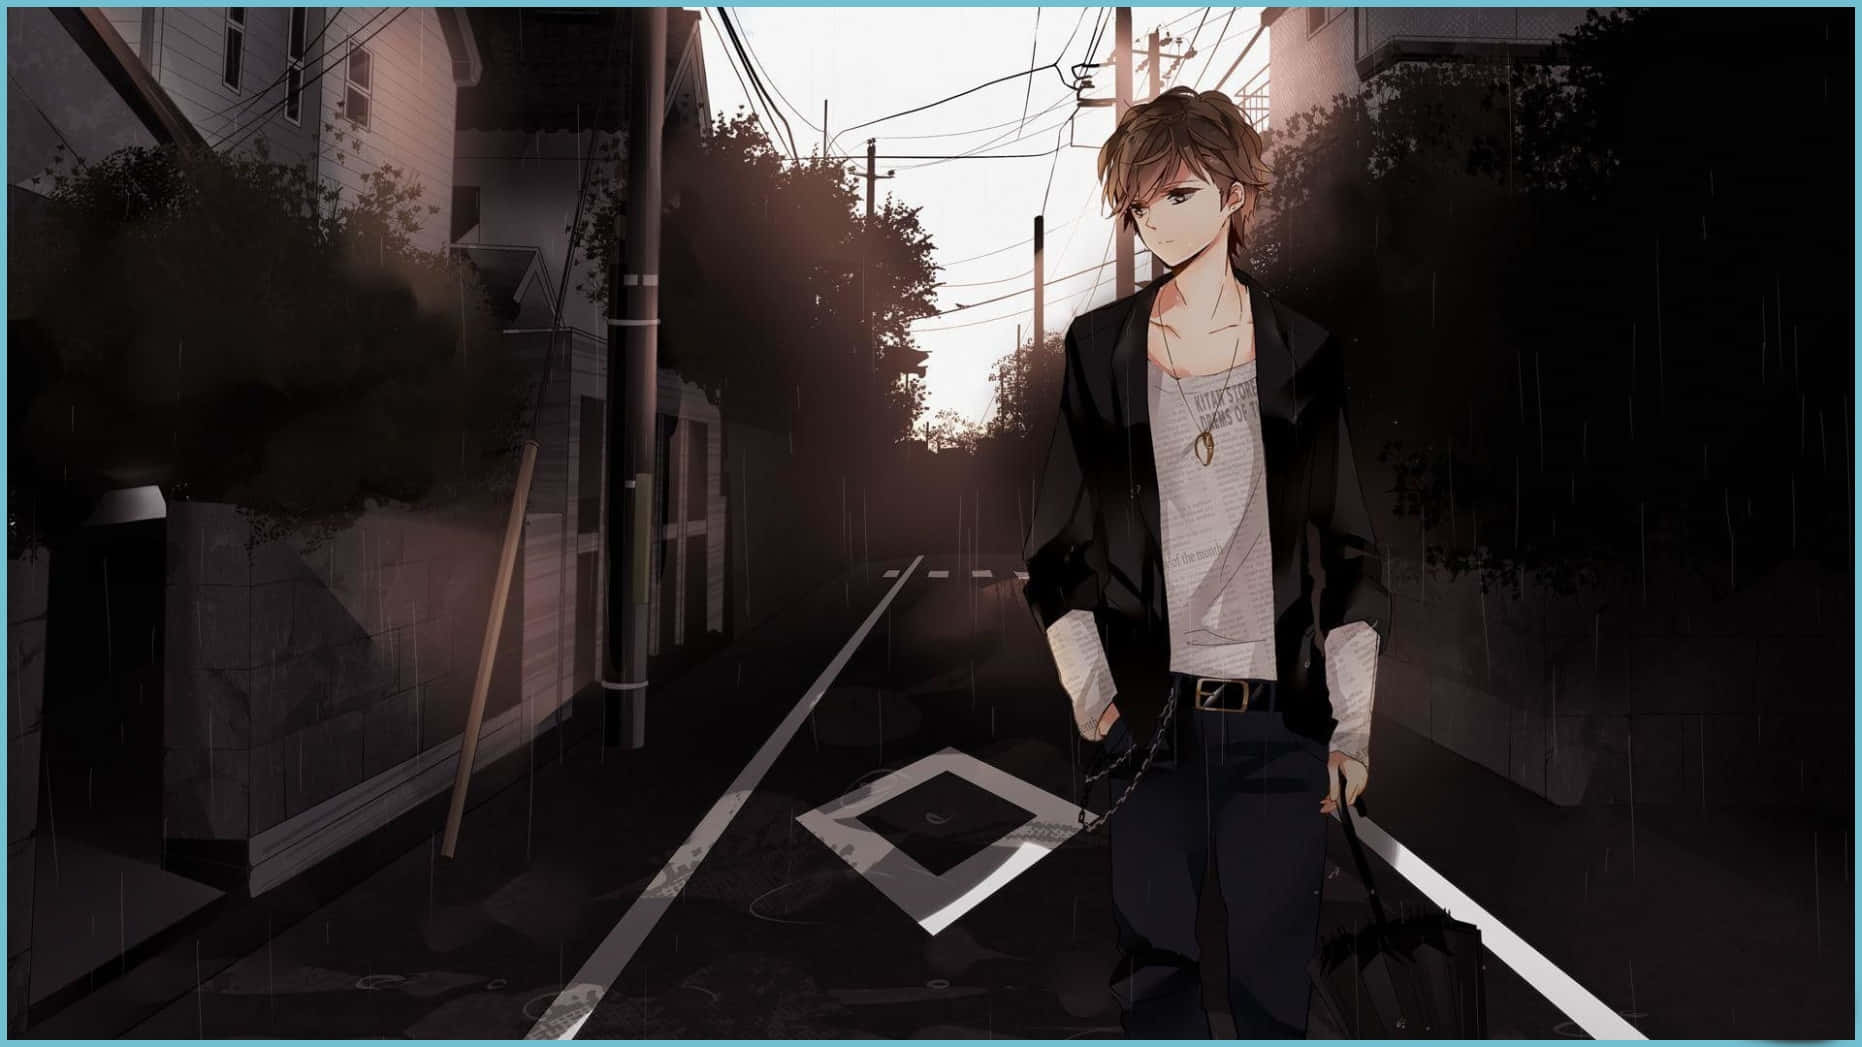 Sad Depressing Anime Teenage Boy Walking Street Wallpaper